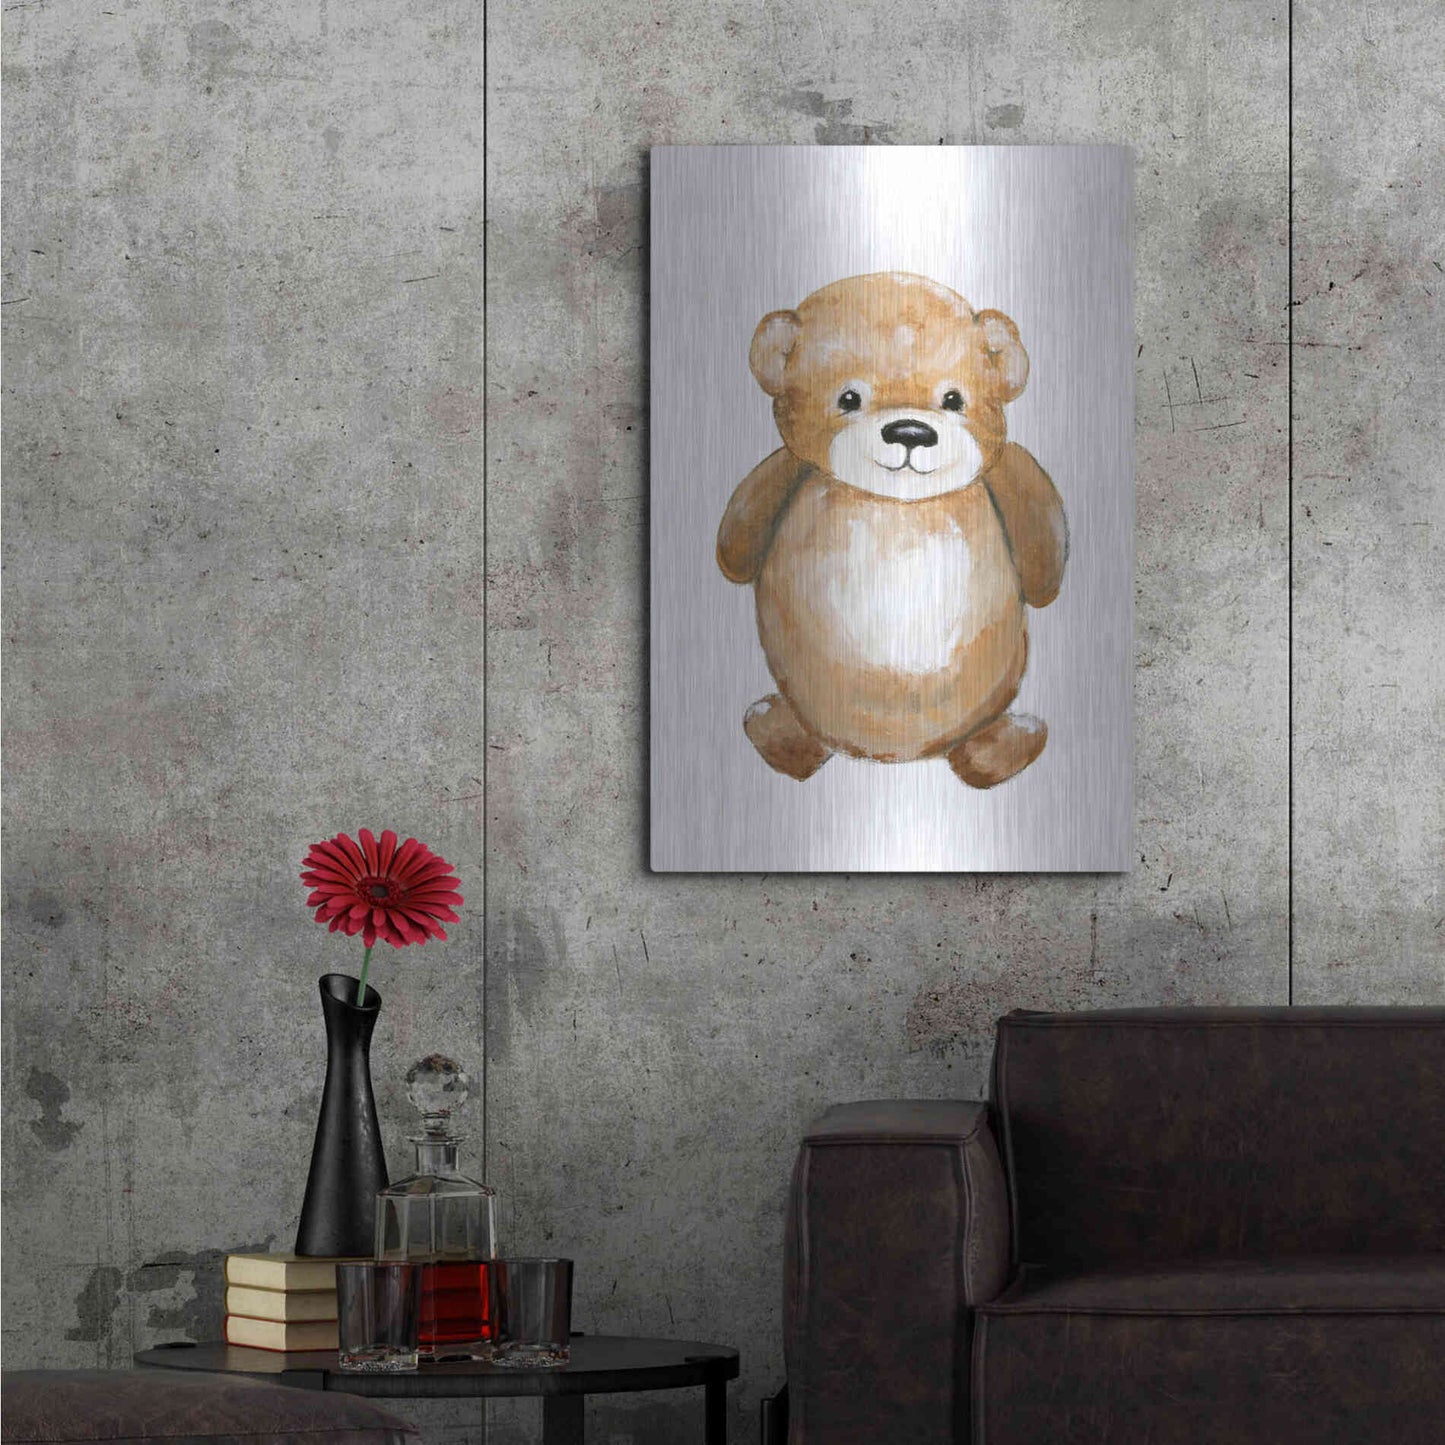 Luxe Metal Art 'Little Bear' by Design Fabrikken, Metal Wall Art,24x36